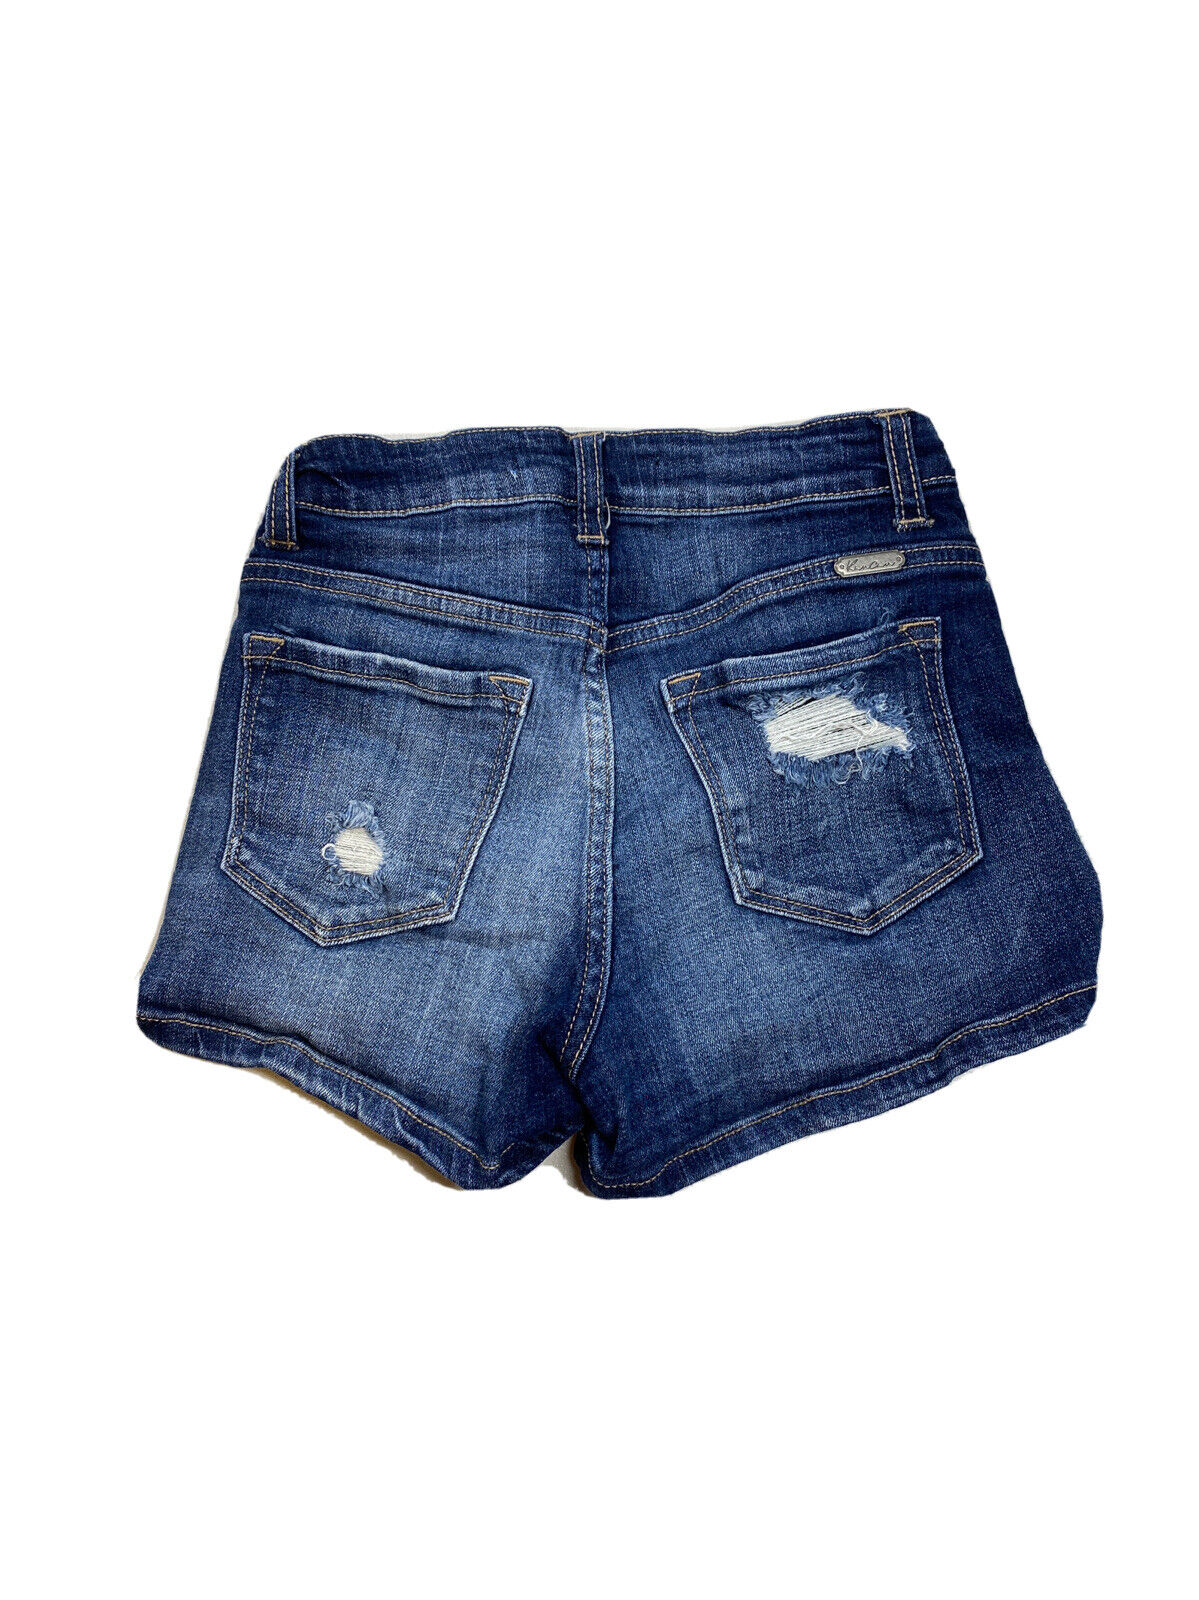 Kancan Pantalones cortos vaqueros de mezclilla de talle alto desgastados con lavado oscuro para mujer - 25